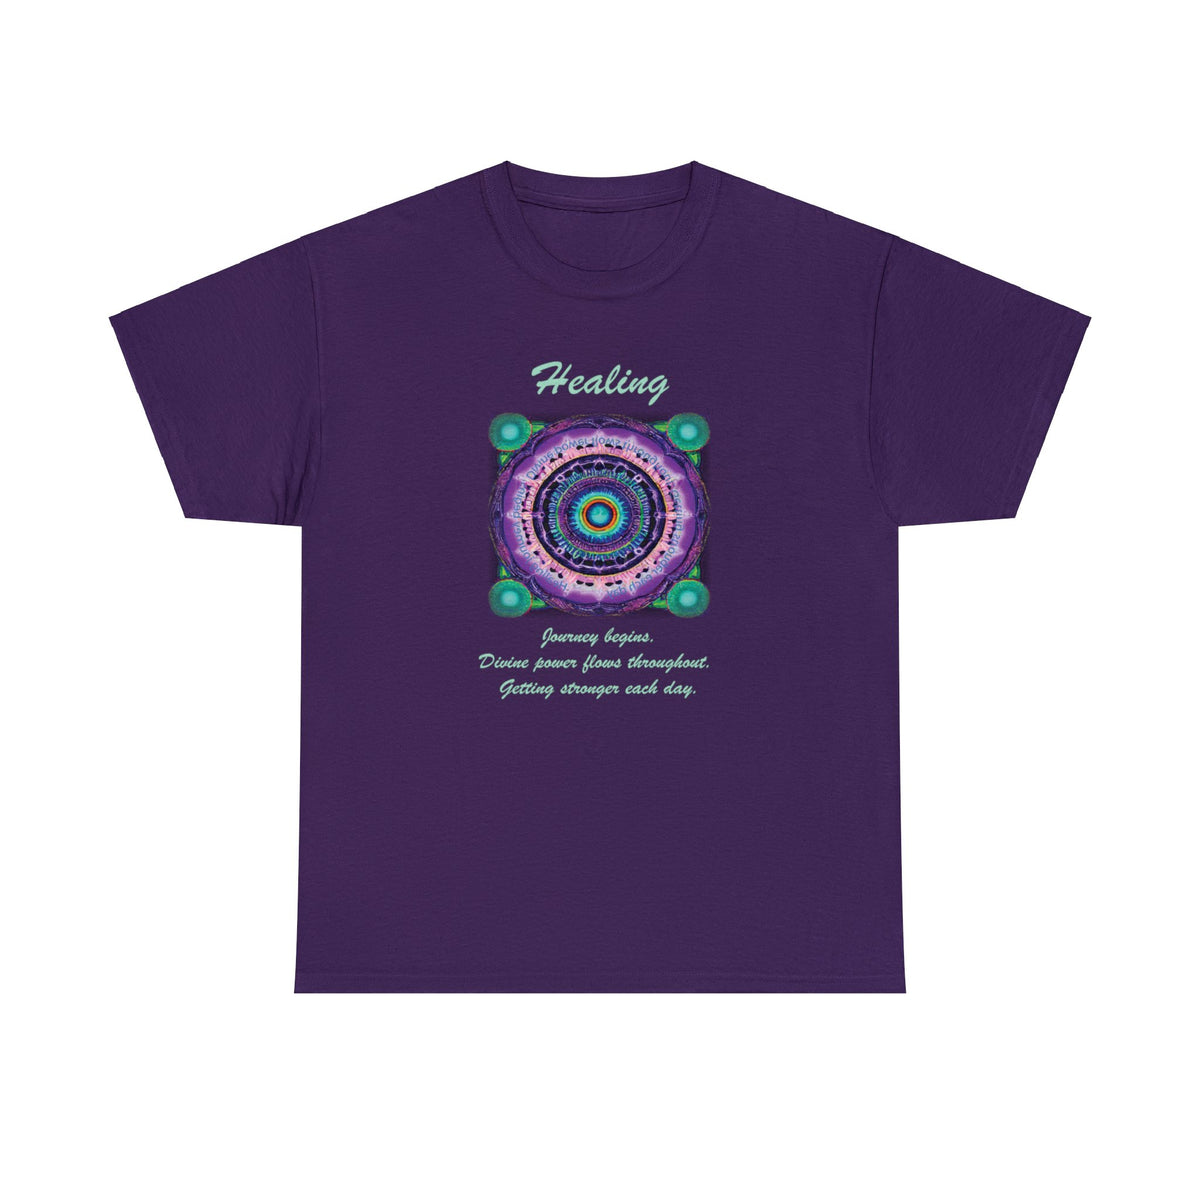 Wellness shirts - 432 Hz Healing Frequency Healing Mandala